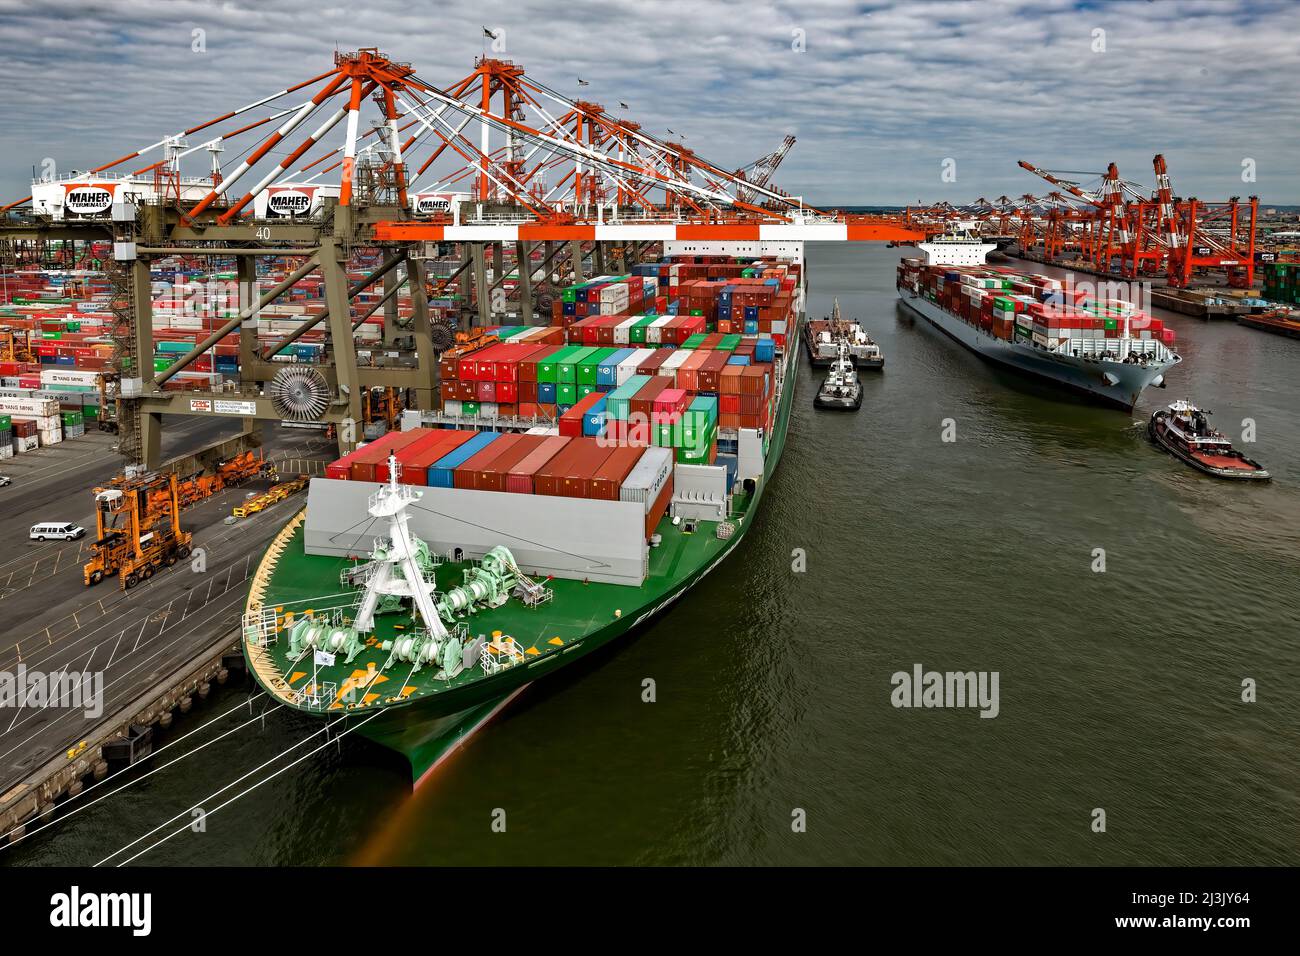 Panamax y Super Post Panamax son términos para los límites de tamaño de los barcos que viajan a través del Canal de Panamá. Foto de stock